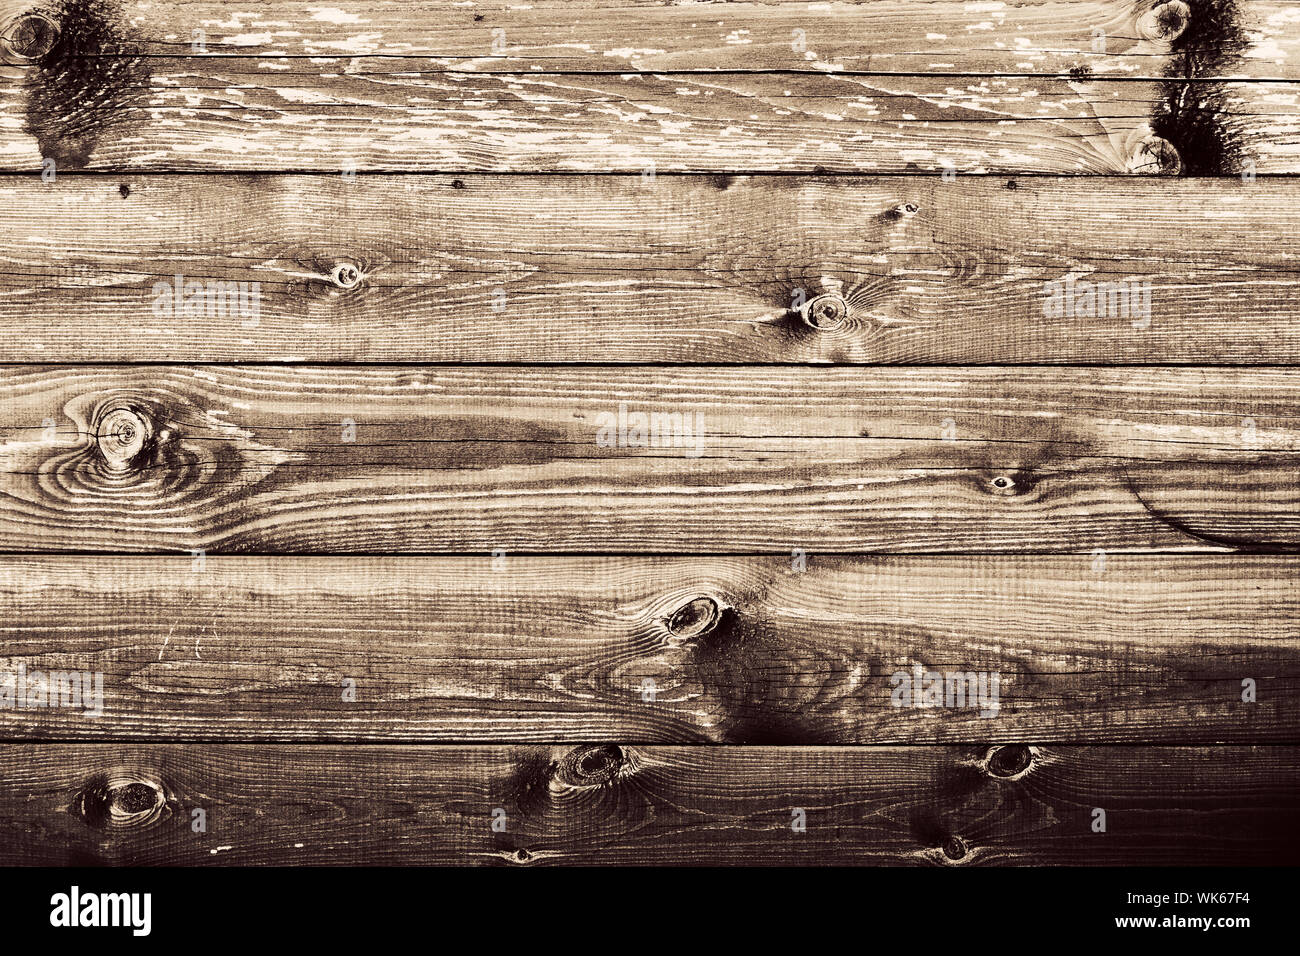 Tường gỗ lão hóa chẳng những mang lại vẻ đẹp độc đáo mà còn tăng thêm sự ấm áp cho không gian sống của bạn. Khám phá sự tuyệt vời của những tấm tường gỗ nâu sáng lão hóa tự nhiên, khiến cho không gian bạn trở nên đáng yêu và gần gũi.